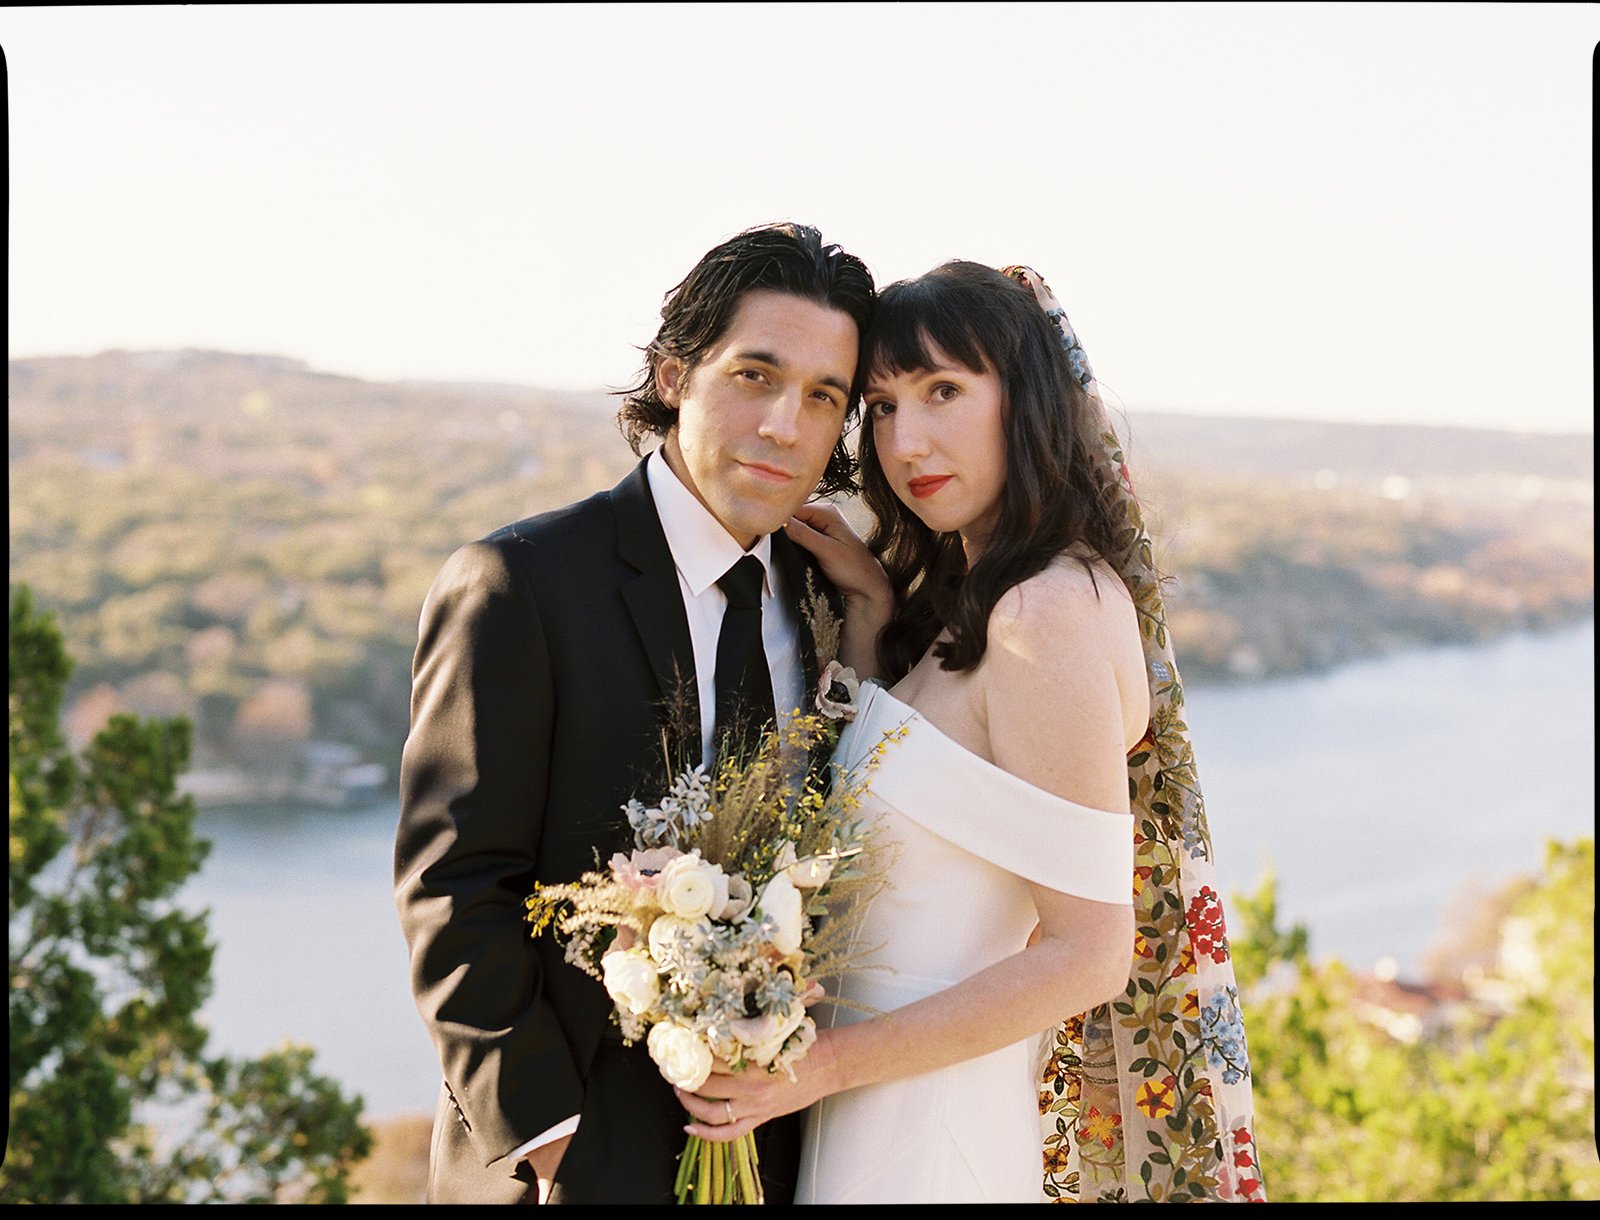 Best-Austin-Wedding-Photographers-Elopement-Film-35mm-Asheville-Santa-Barbara-Laguna-Gloria-23.jpg